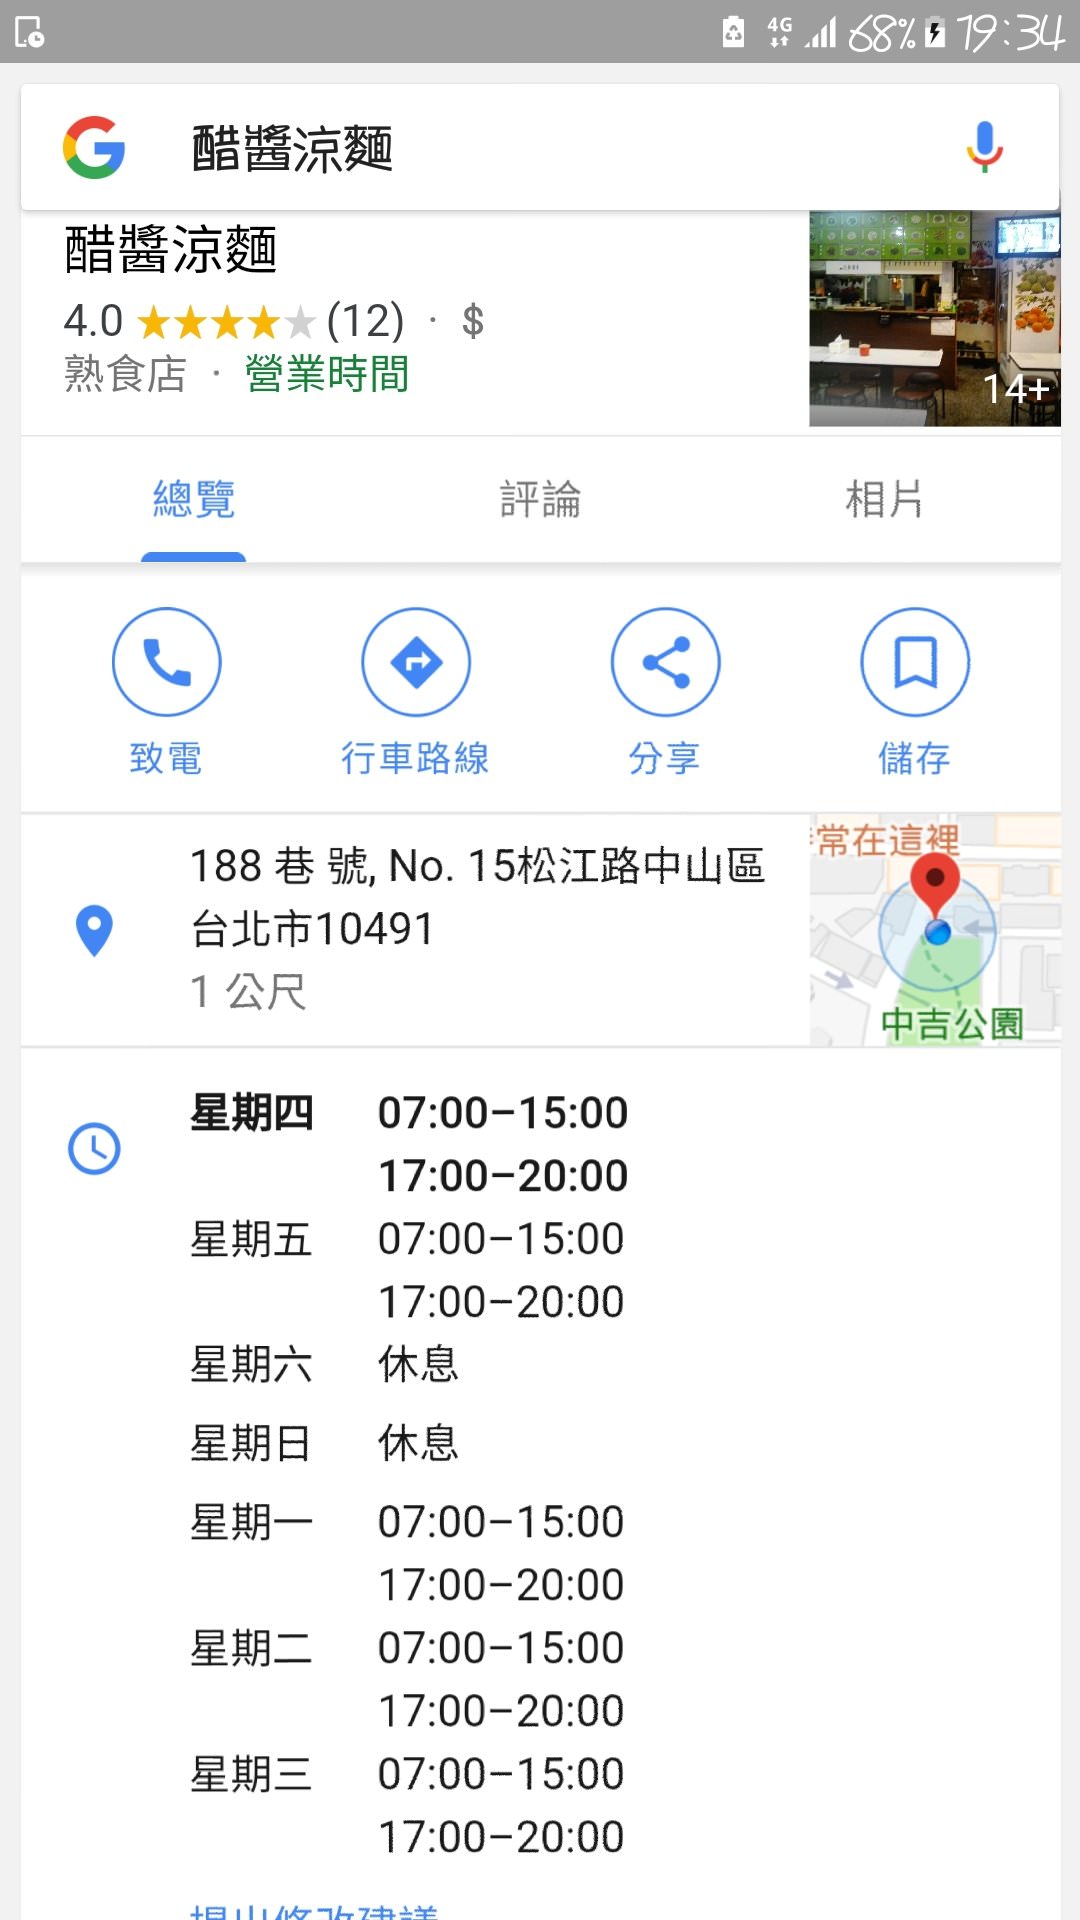 【食記】台北市中山區|醋醬涼麵~巷弄內的平價百元銅板美食